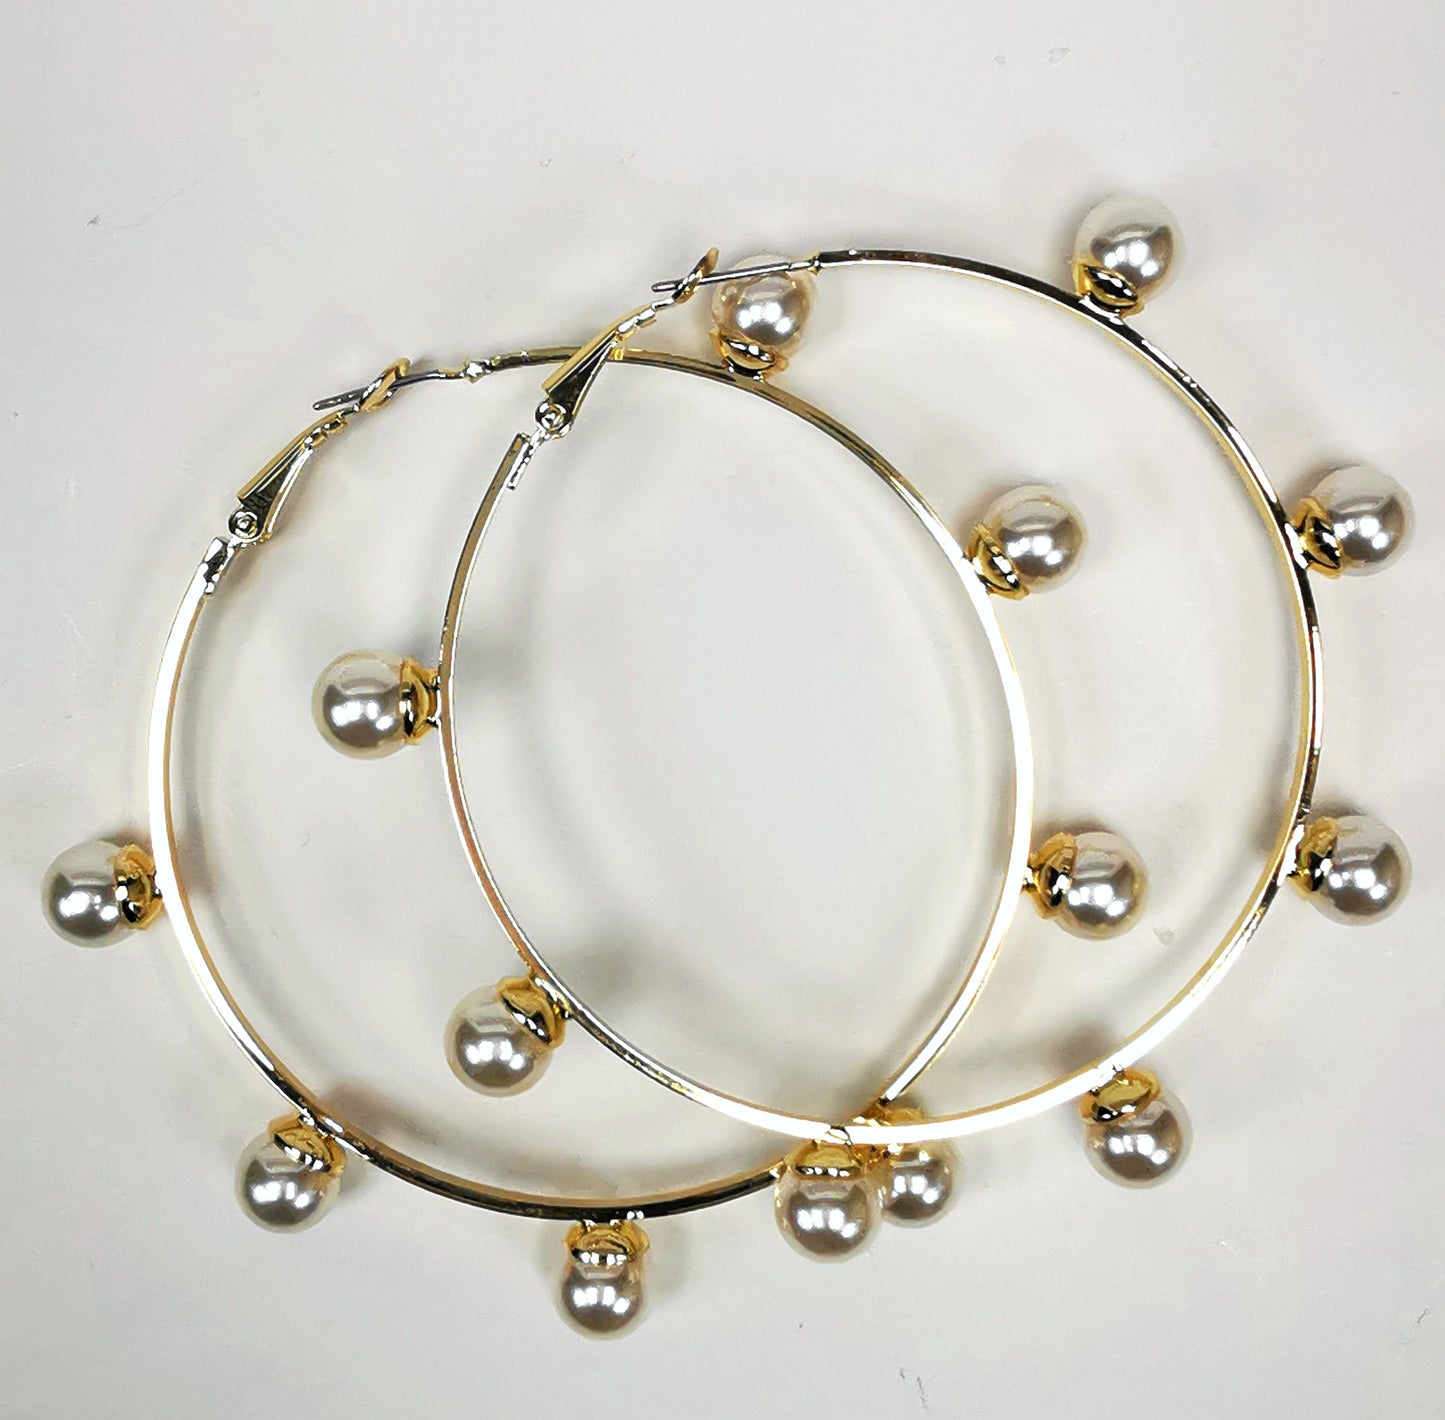 Boucles d'oreilles créoles dorées, diamètre 63mm avec 6 perles fantaisie de 8mm sur l'extérieur. présentées posées sur un fond blanc, l'une sur l'autre. Vue de dessus.